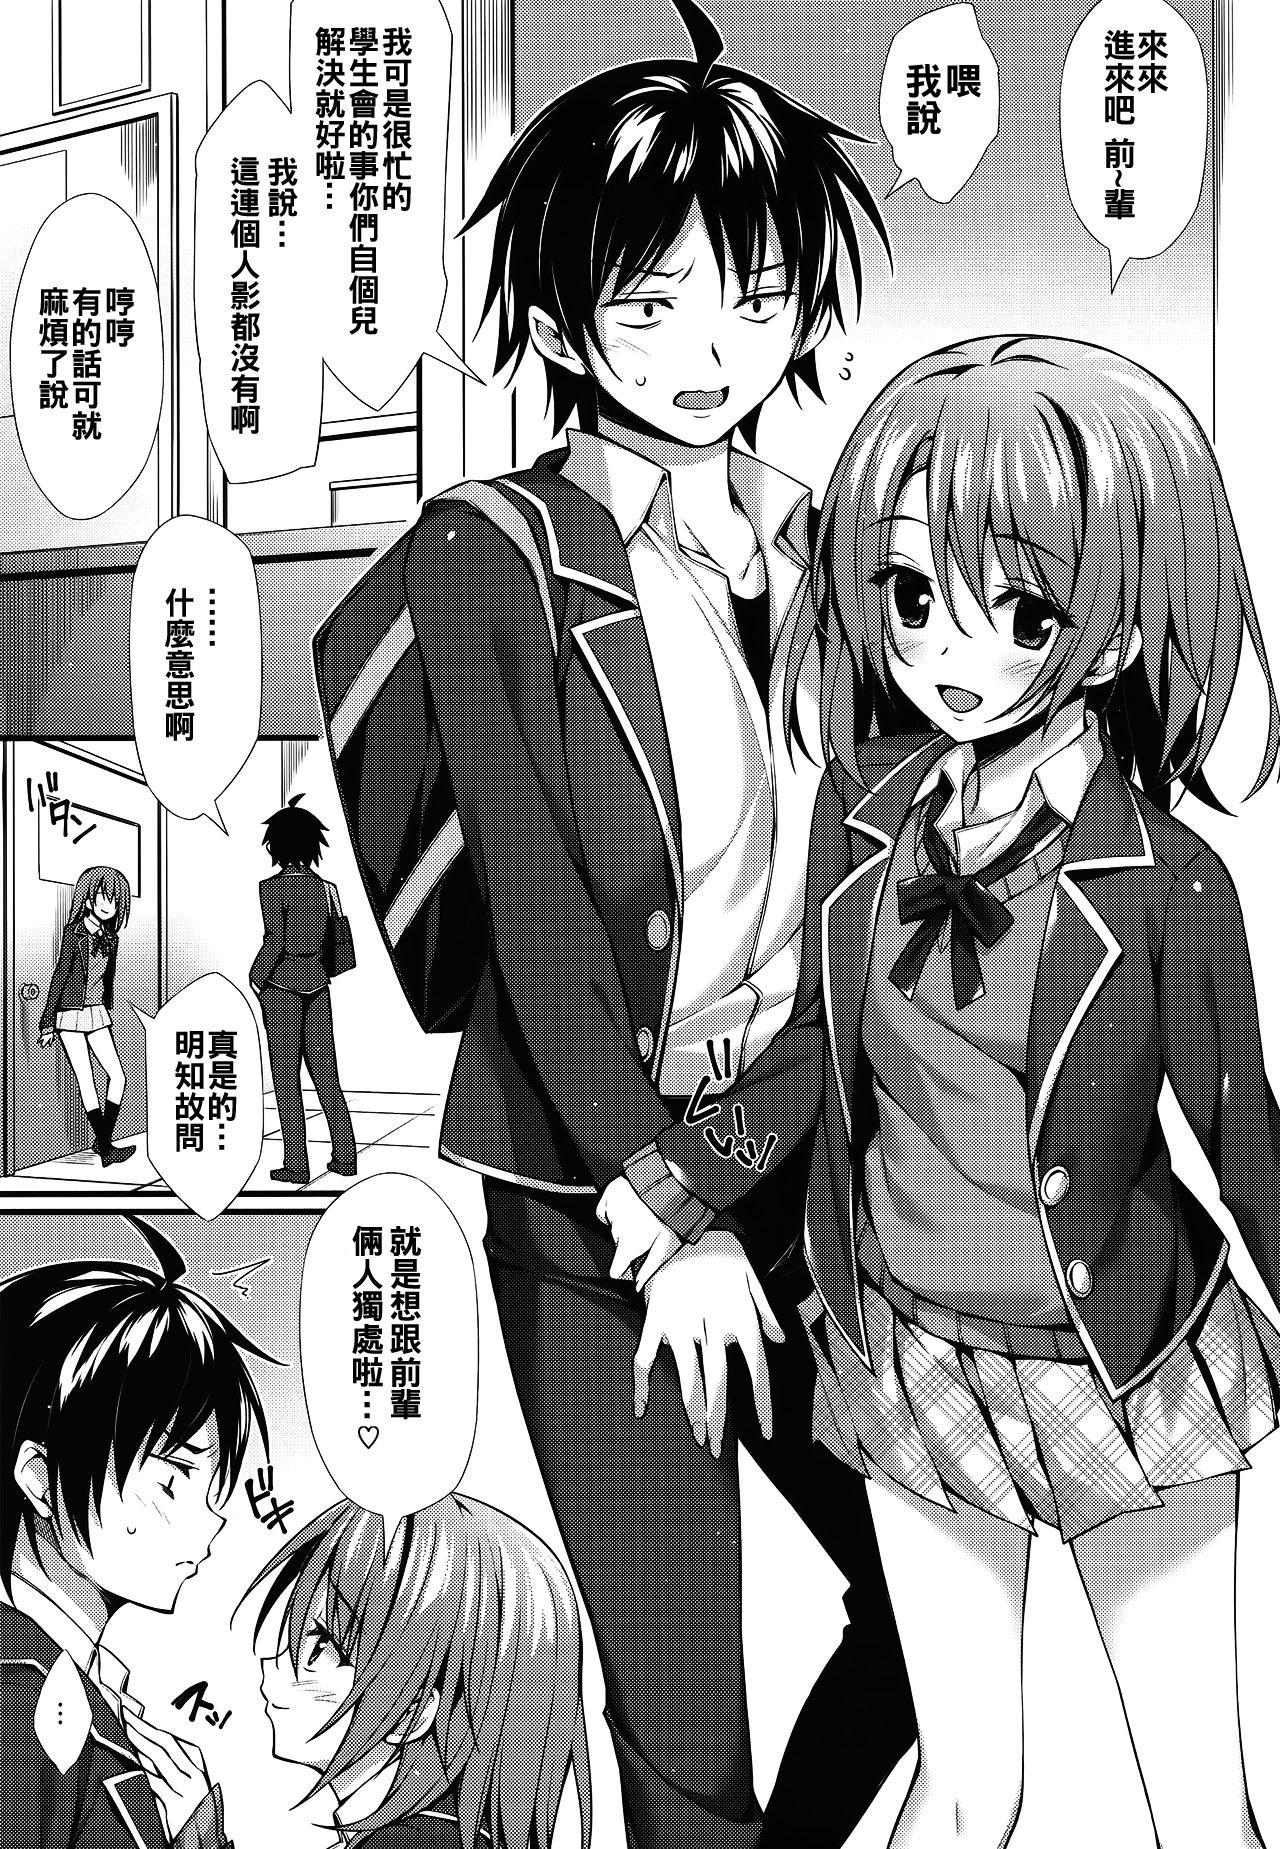 Hunks Atashi no Daisuki na Senpai♥ - Yahari ore no seishun love come wa machigatteiru Adolescente - Page 4